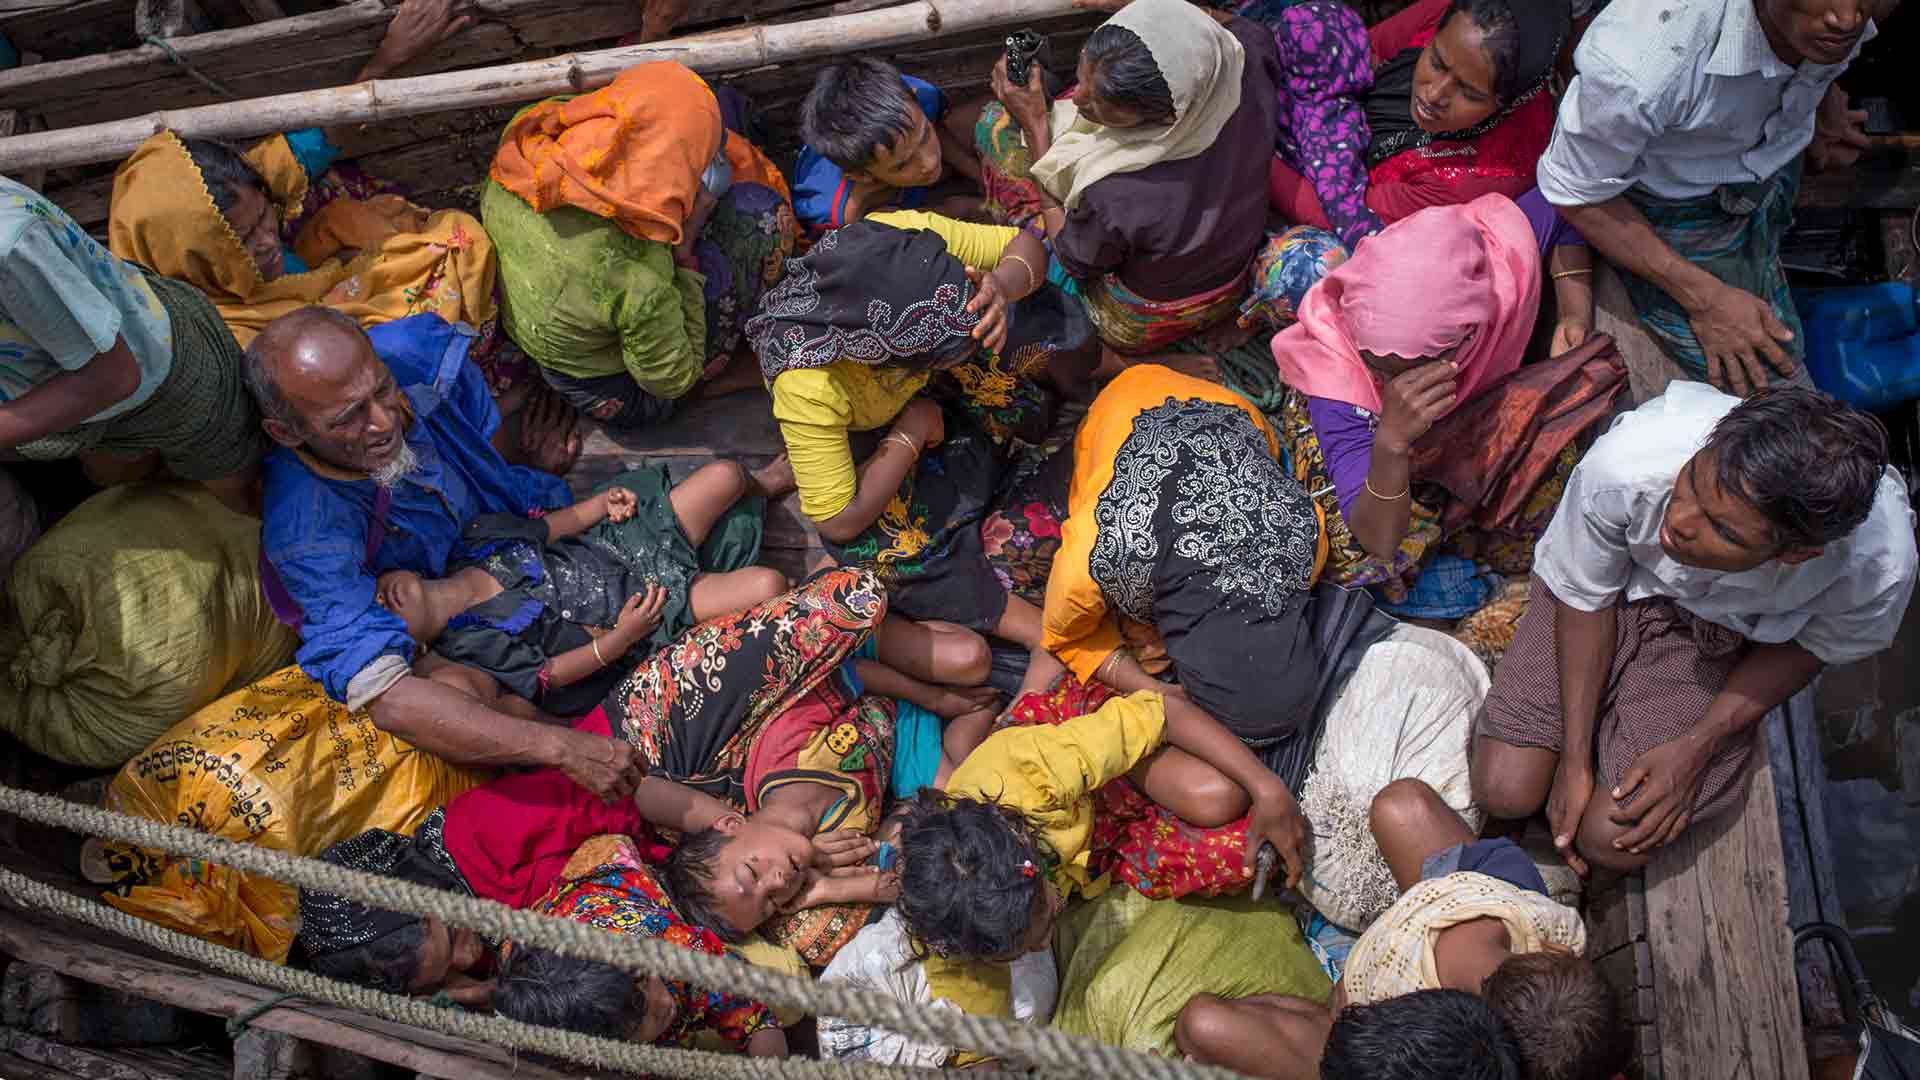 El ejército birmano denuncia la "interferencia" de la ONU en la crisis de los rohingyas